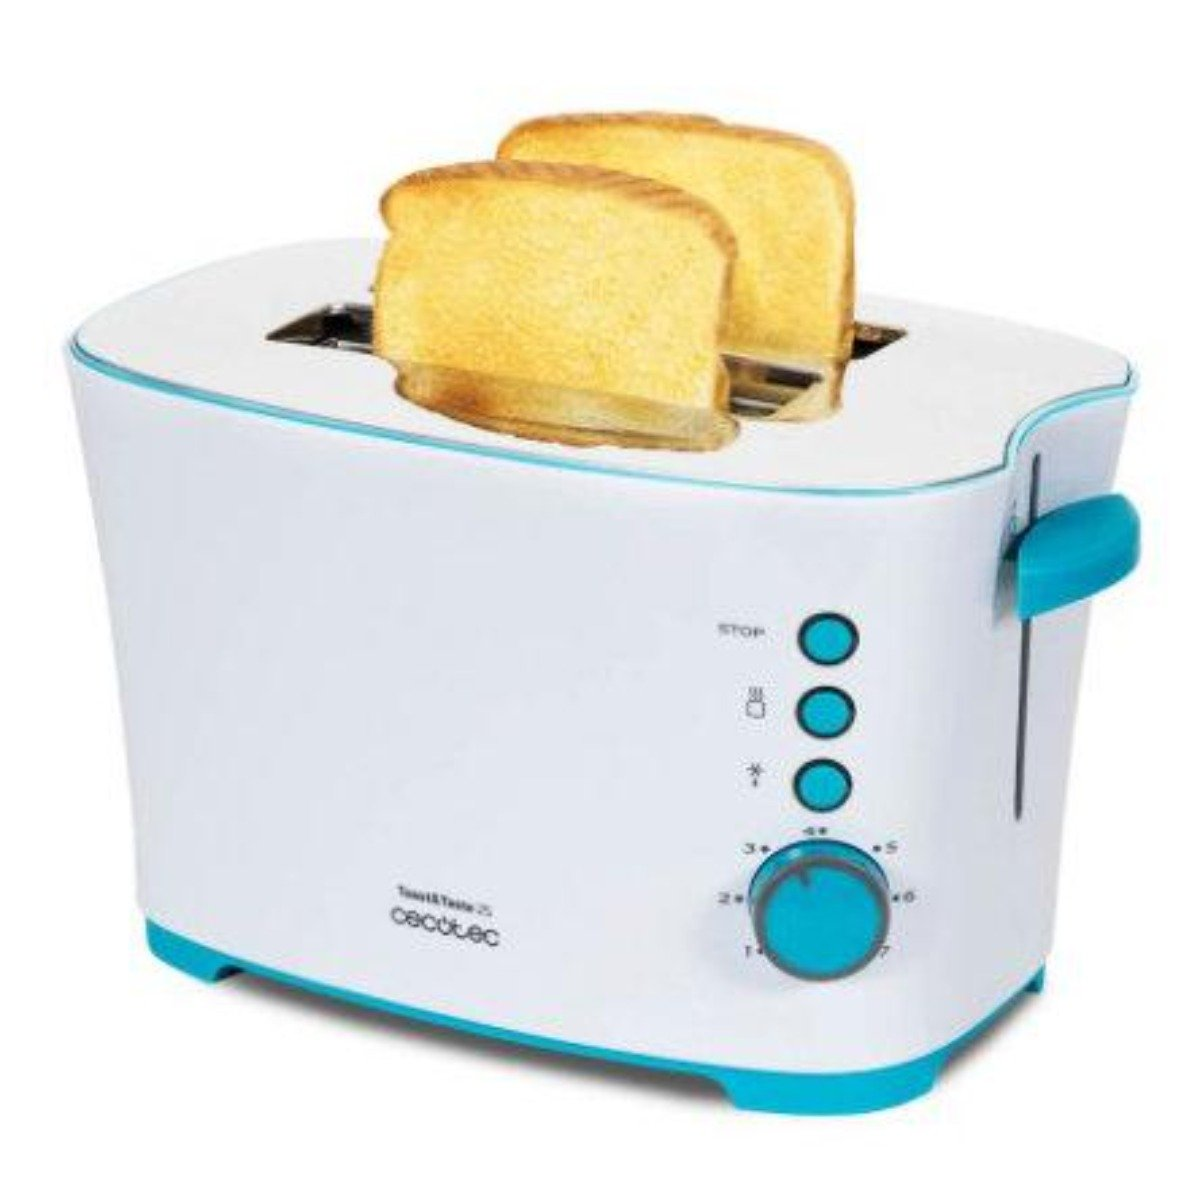 CECOTEC Taste 2S 3027 Toaster 2) Weiß (850 Watt, Schlitze